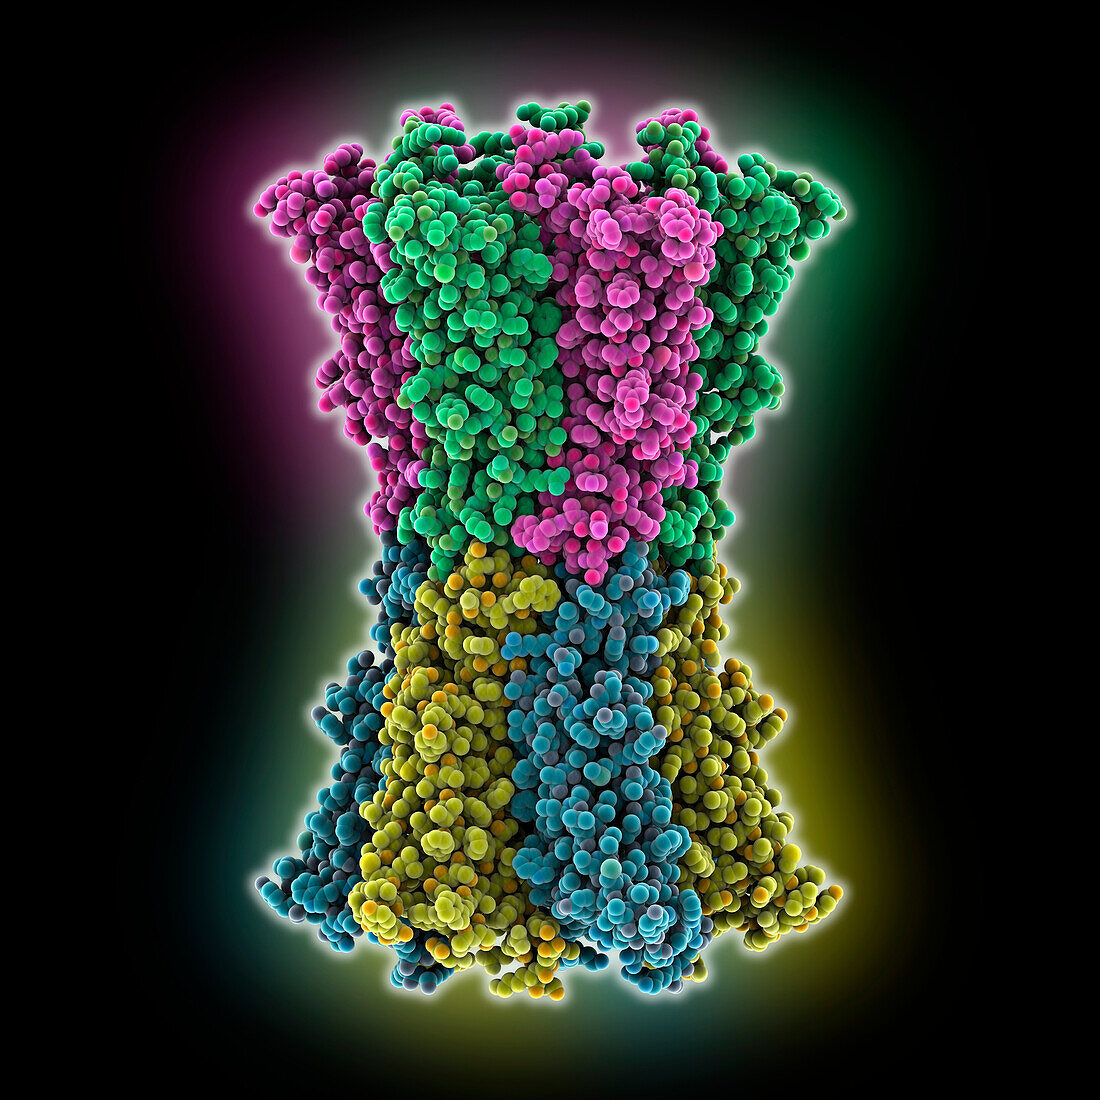 Human connexin 26 dodecamer, molecular model